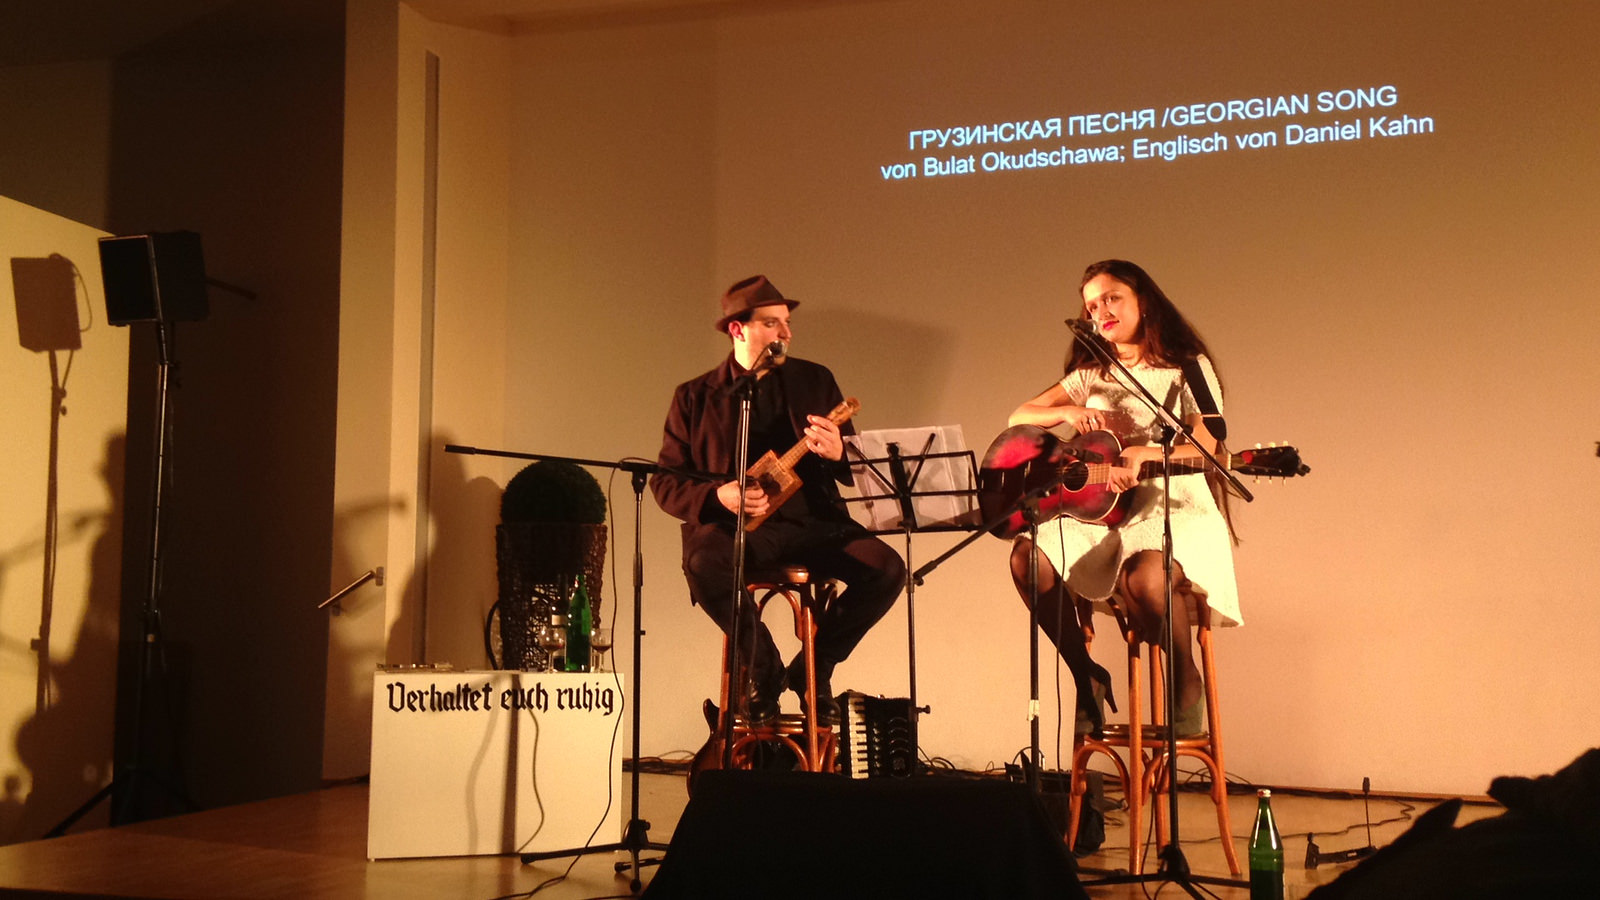 Daniel Kahn und Sasha Lurje singen Bulat Okudzhava im Gemeindesaal der Jüdischen Gemeinde Gelsenkirchen